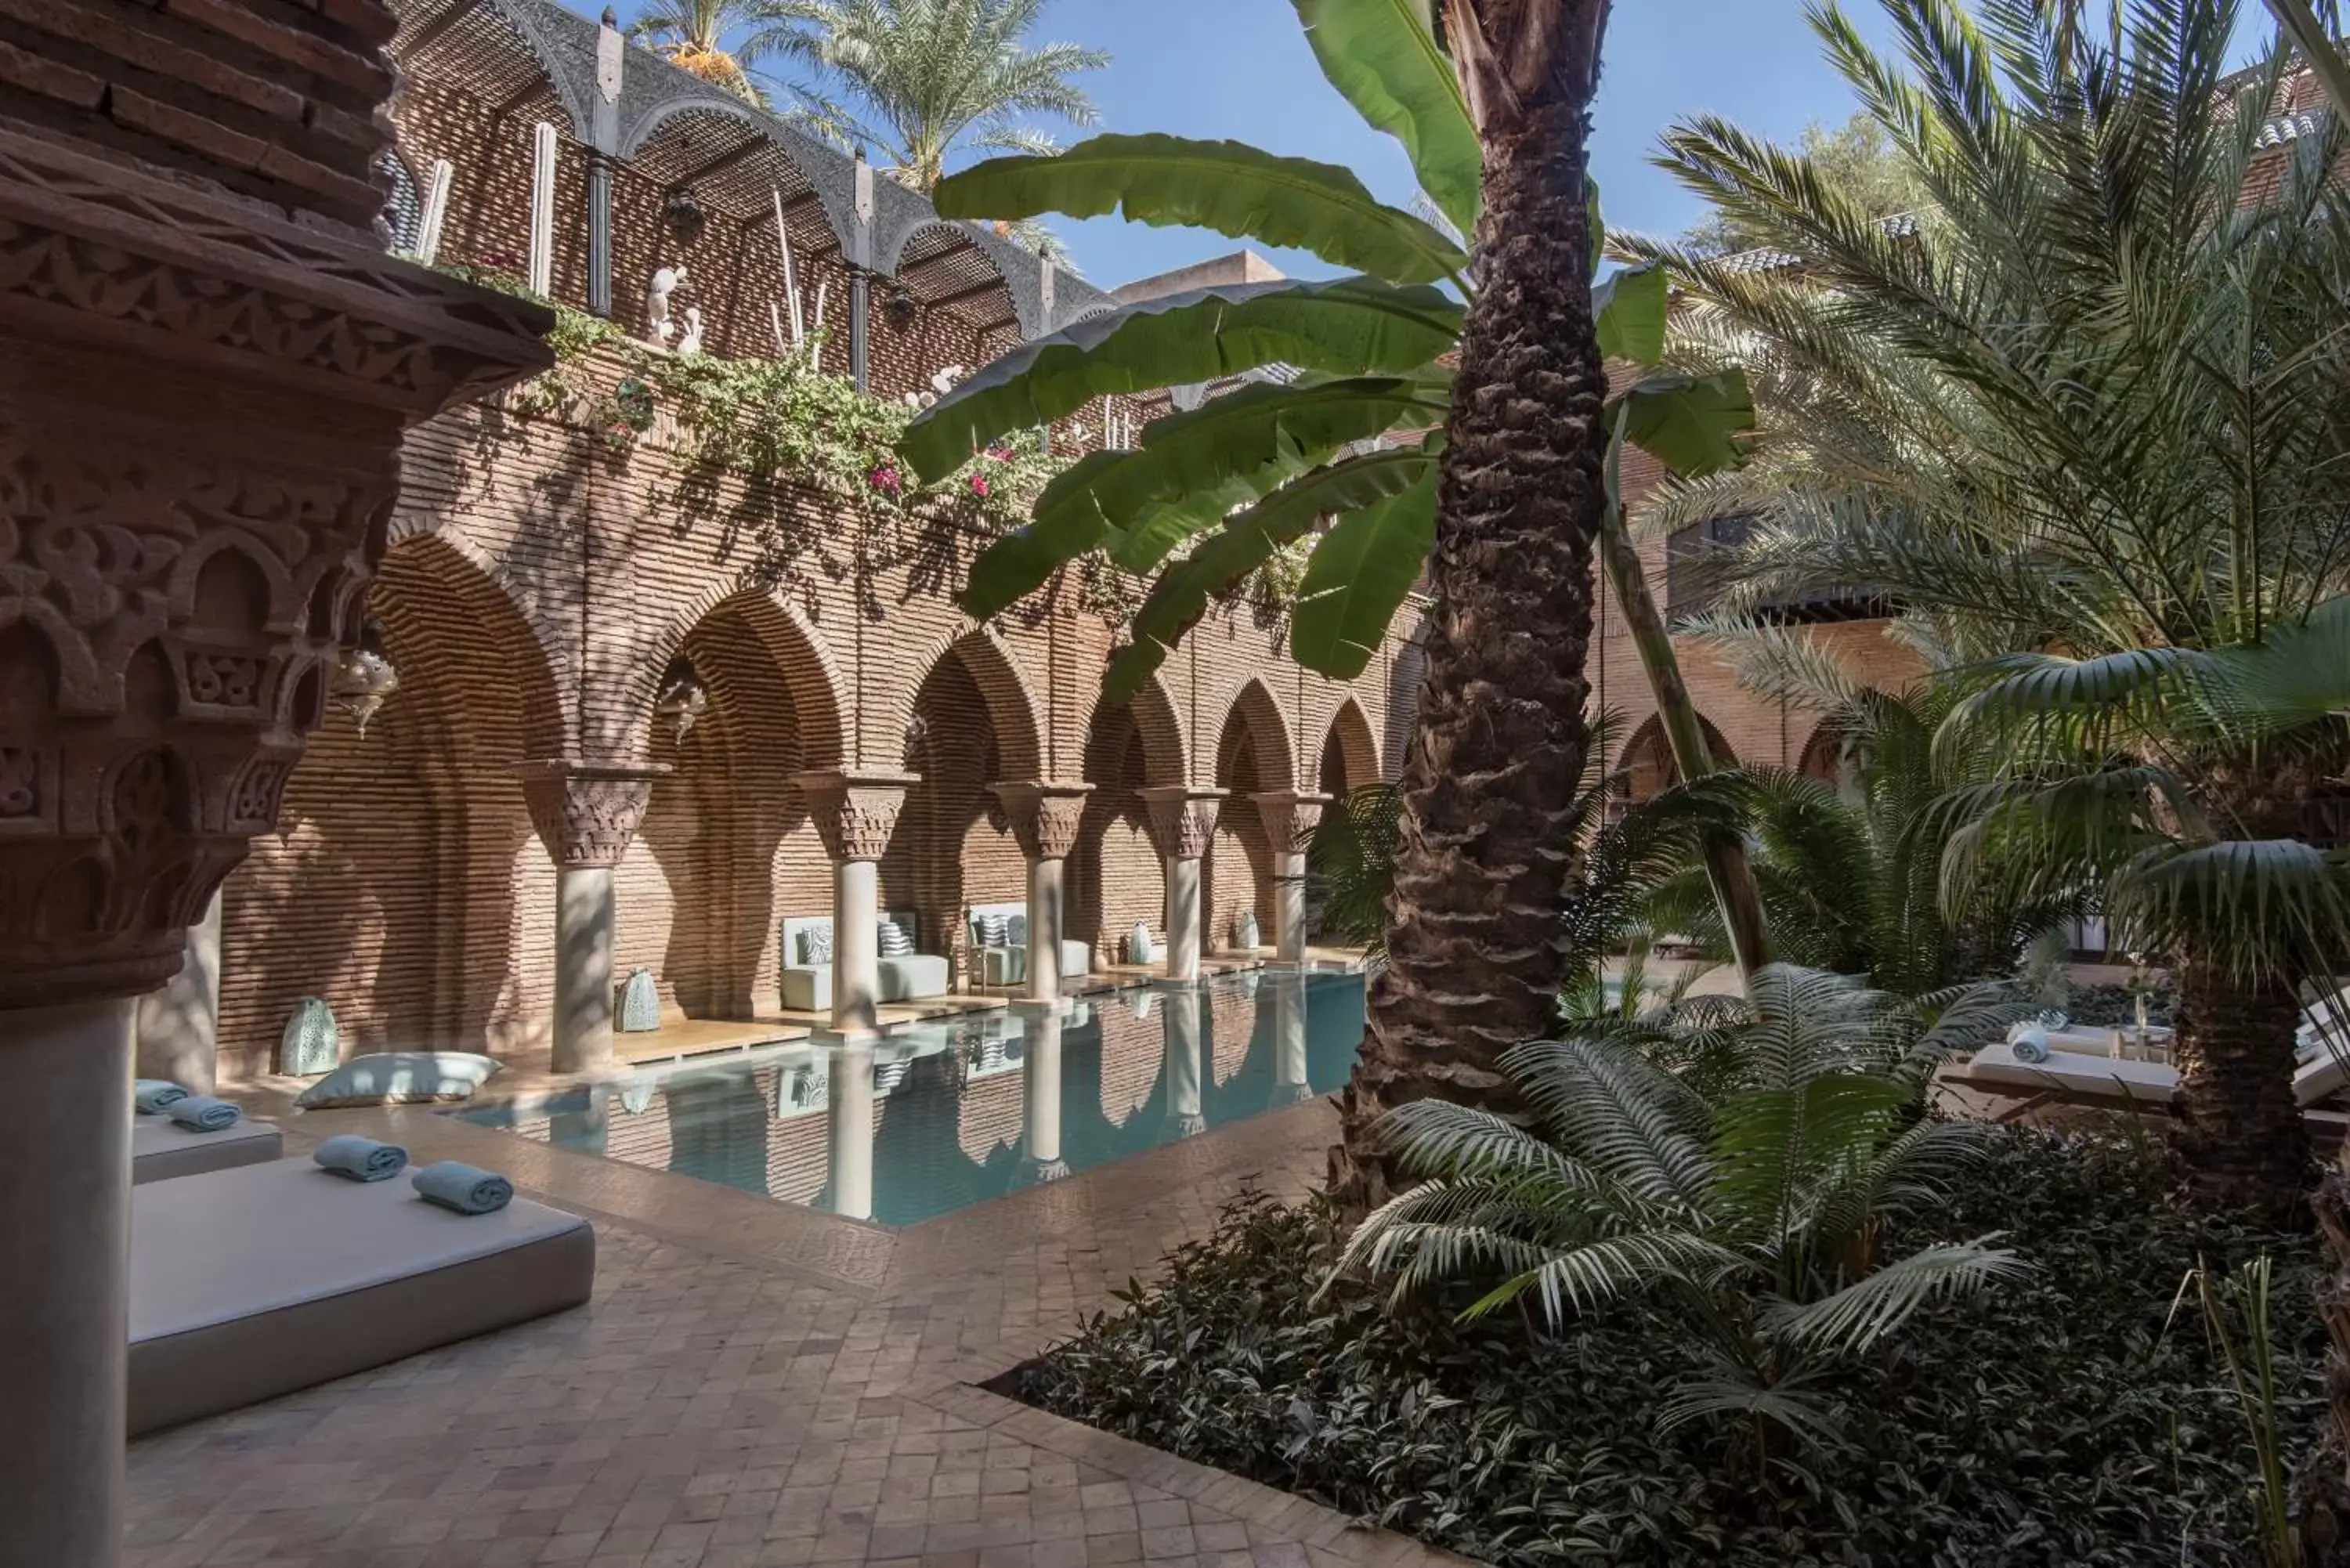 Swimming Pool in La Sultana Marrakech